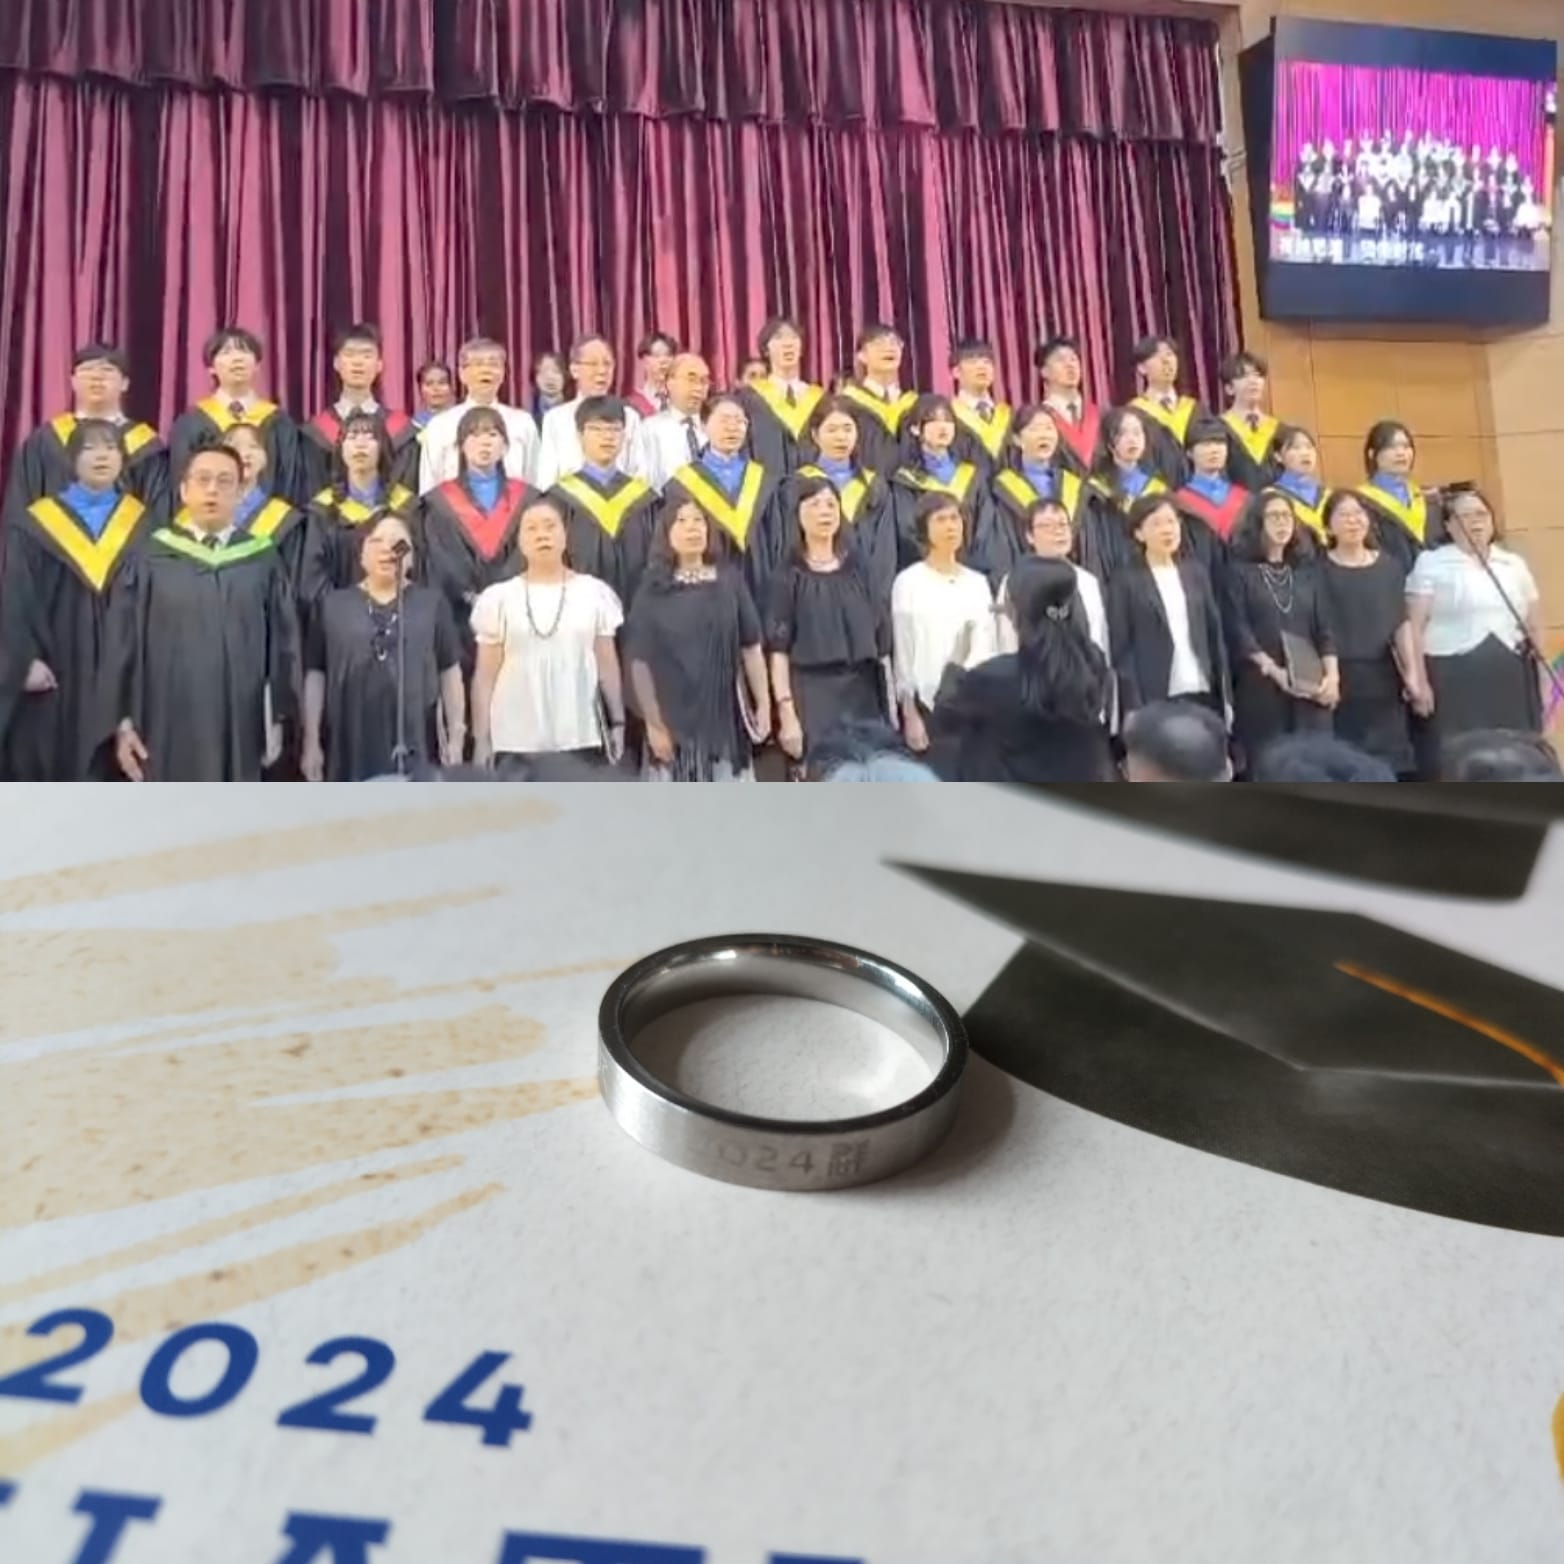 青中群社(2024)畢業禮於6月1日圓滿舉行